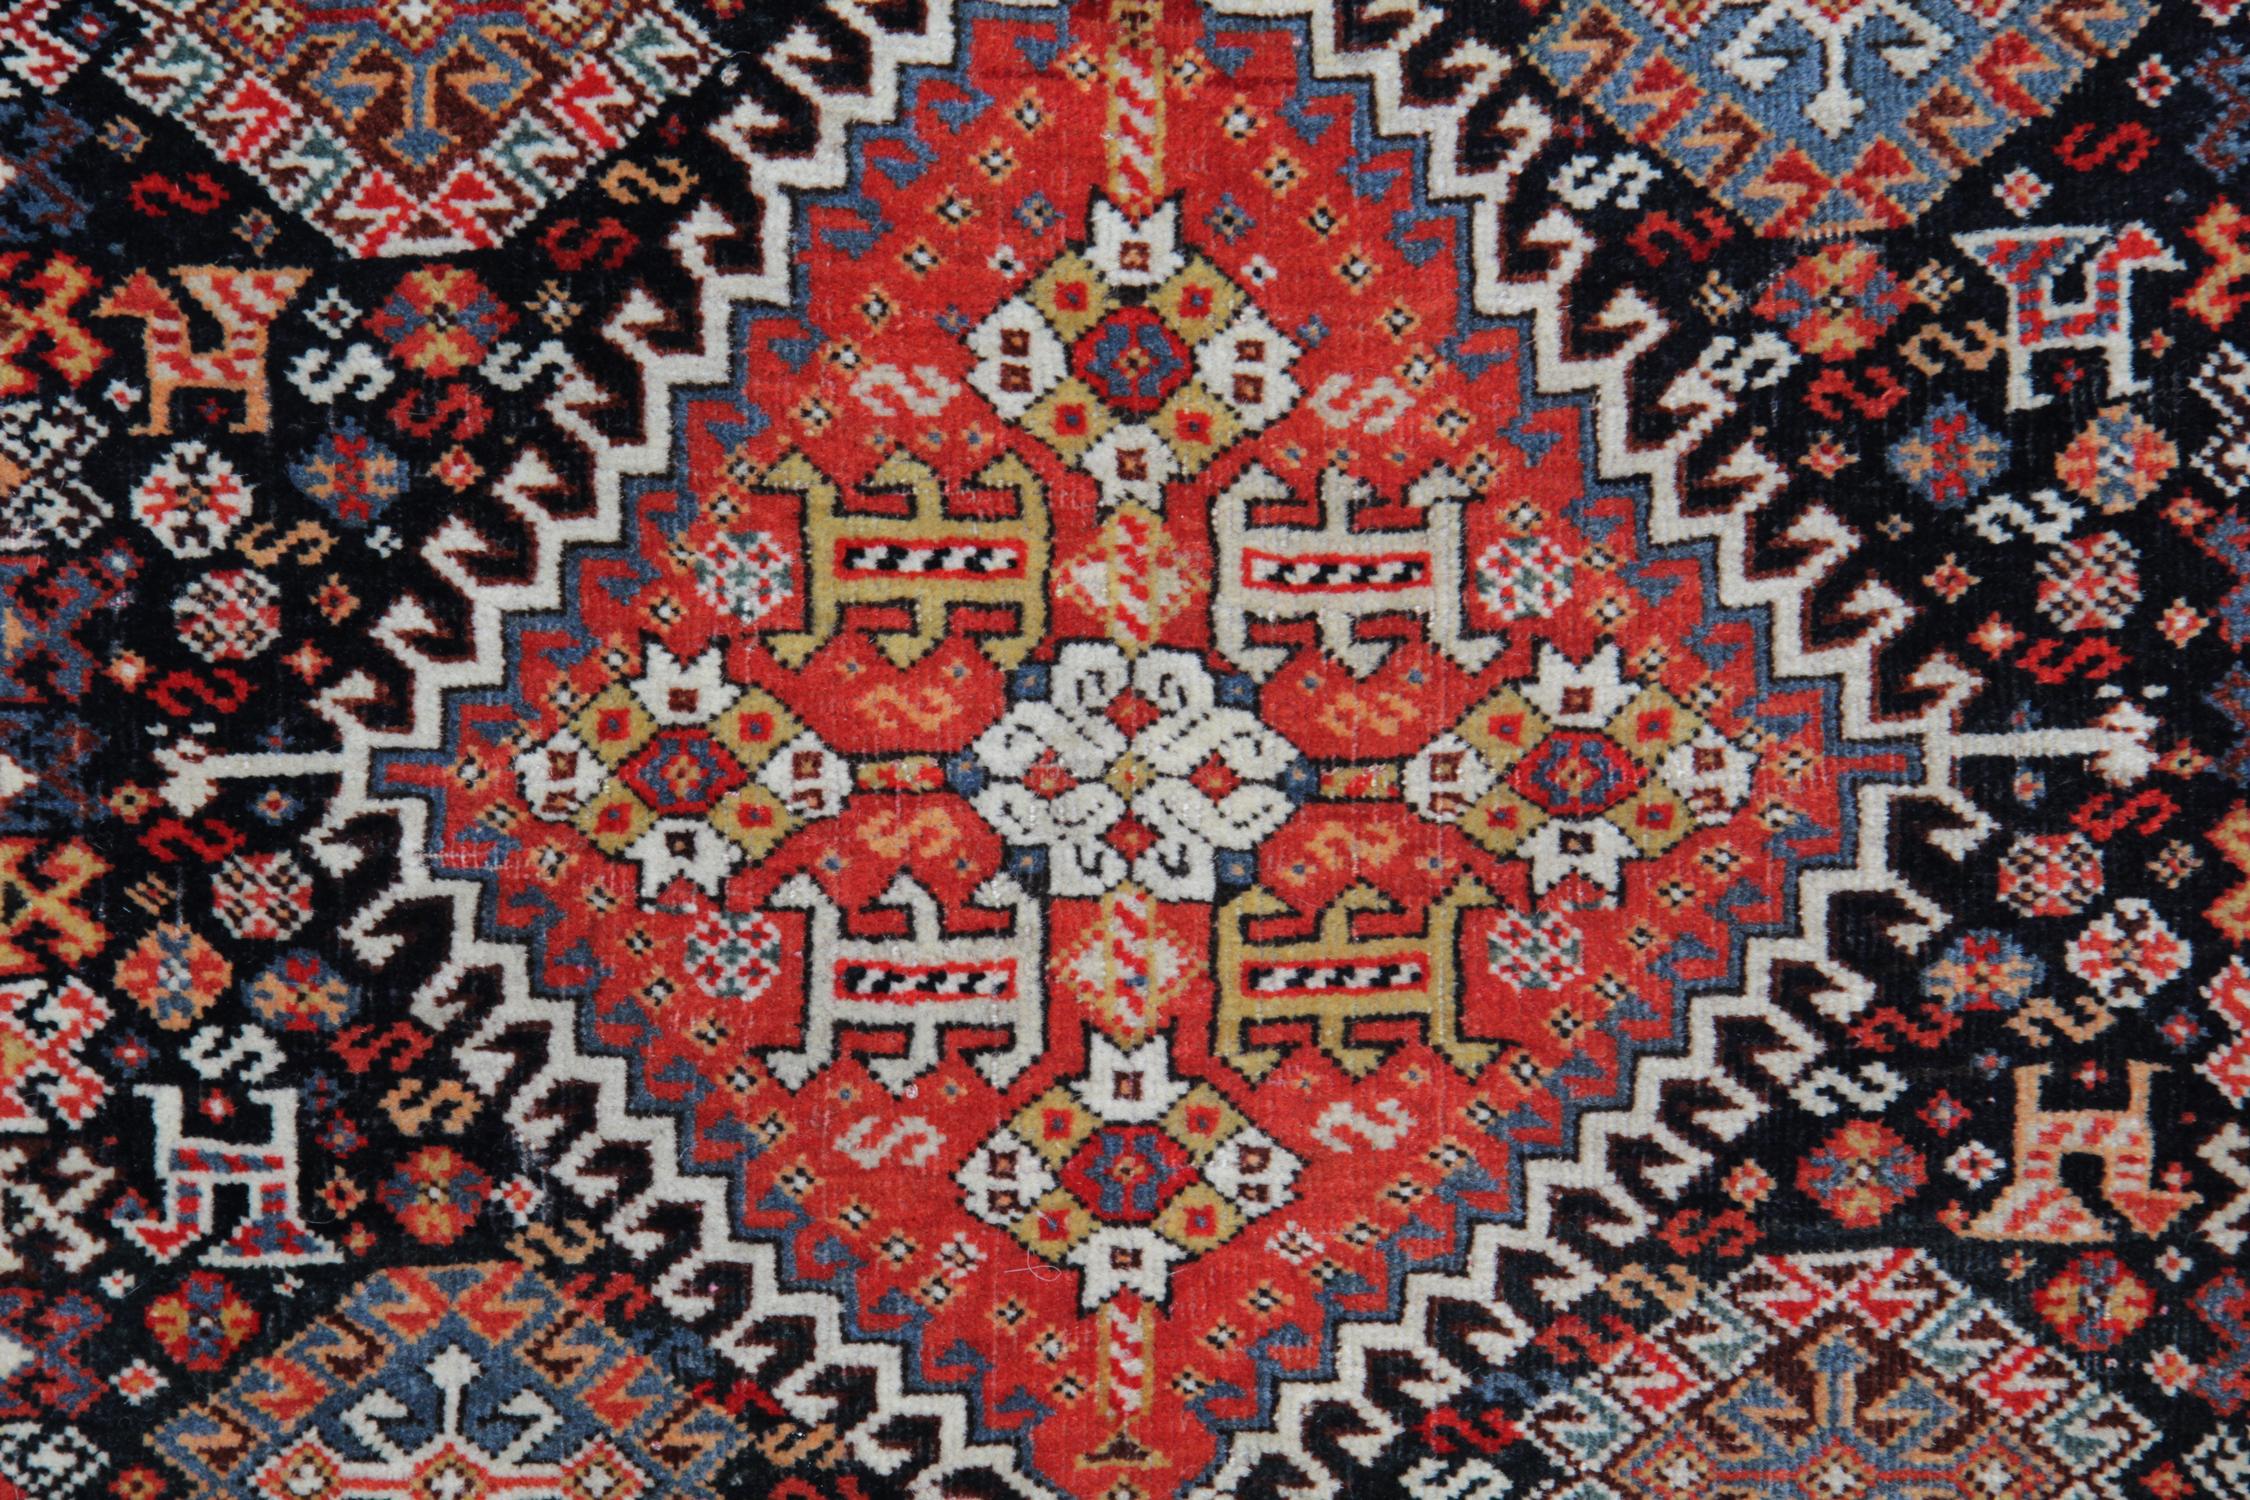 Dieser schöne Teppich ist ein gutes Beispiel für Teppiche, die in den 1880er Jahren gewebt wurden. Die Raute ist von kleineren Motiven und Tierfiguren umgeben, die auf einem kontrastierenden schwarzen Hintergrund mit Akzenten in Rot, Elfenbein und